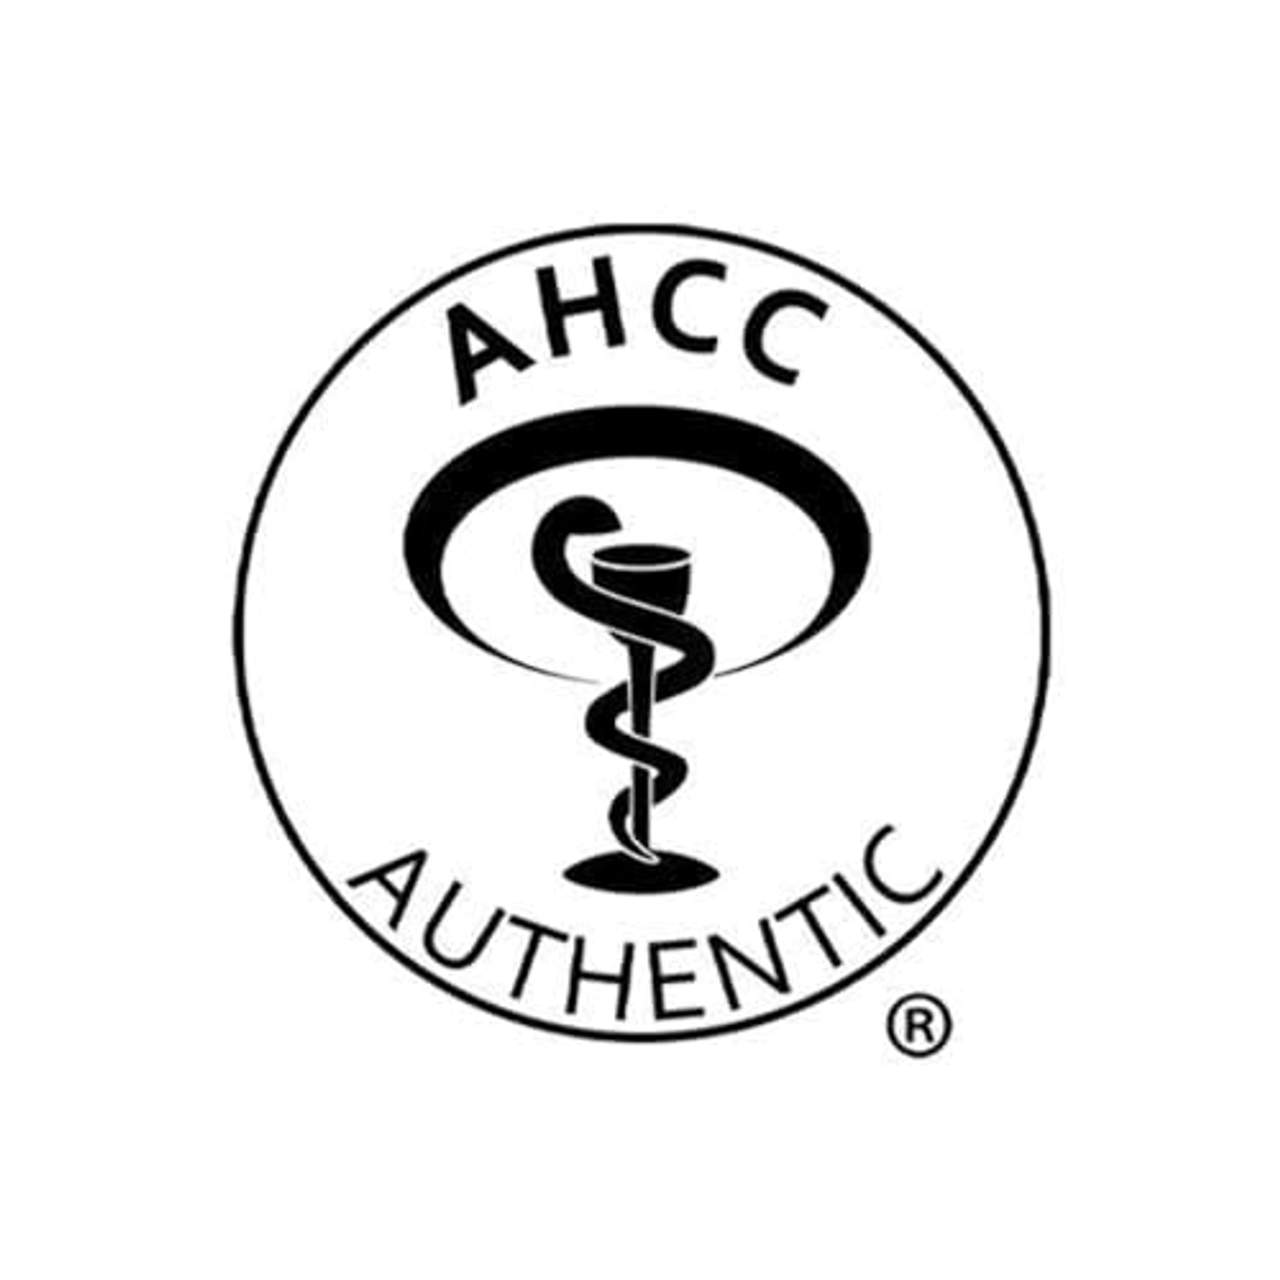 Reg'Activ Ahcc 500+ authentische AHCC-Kapseln